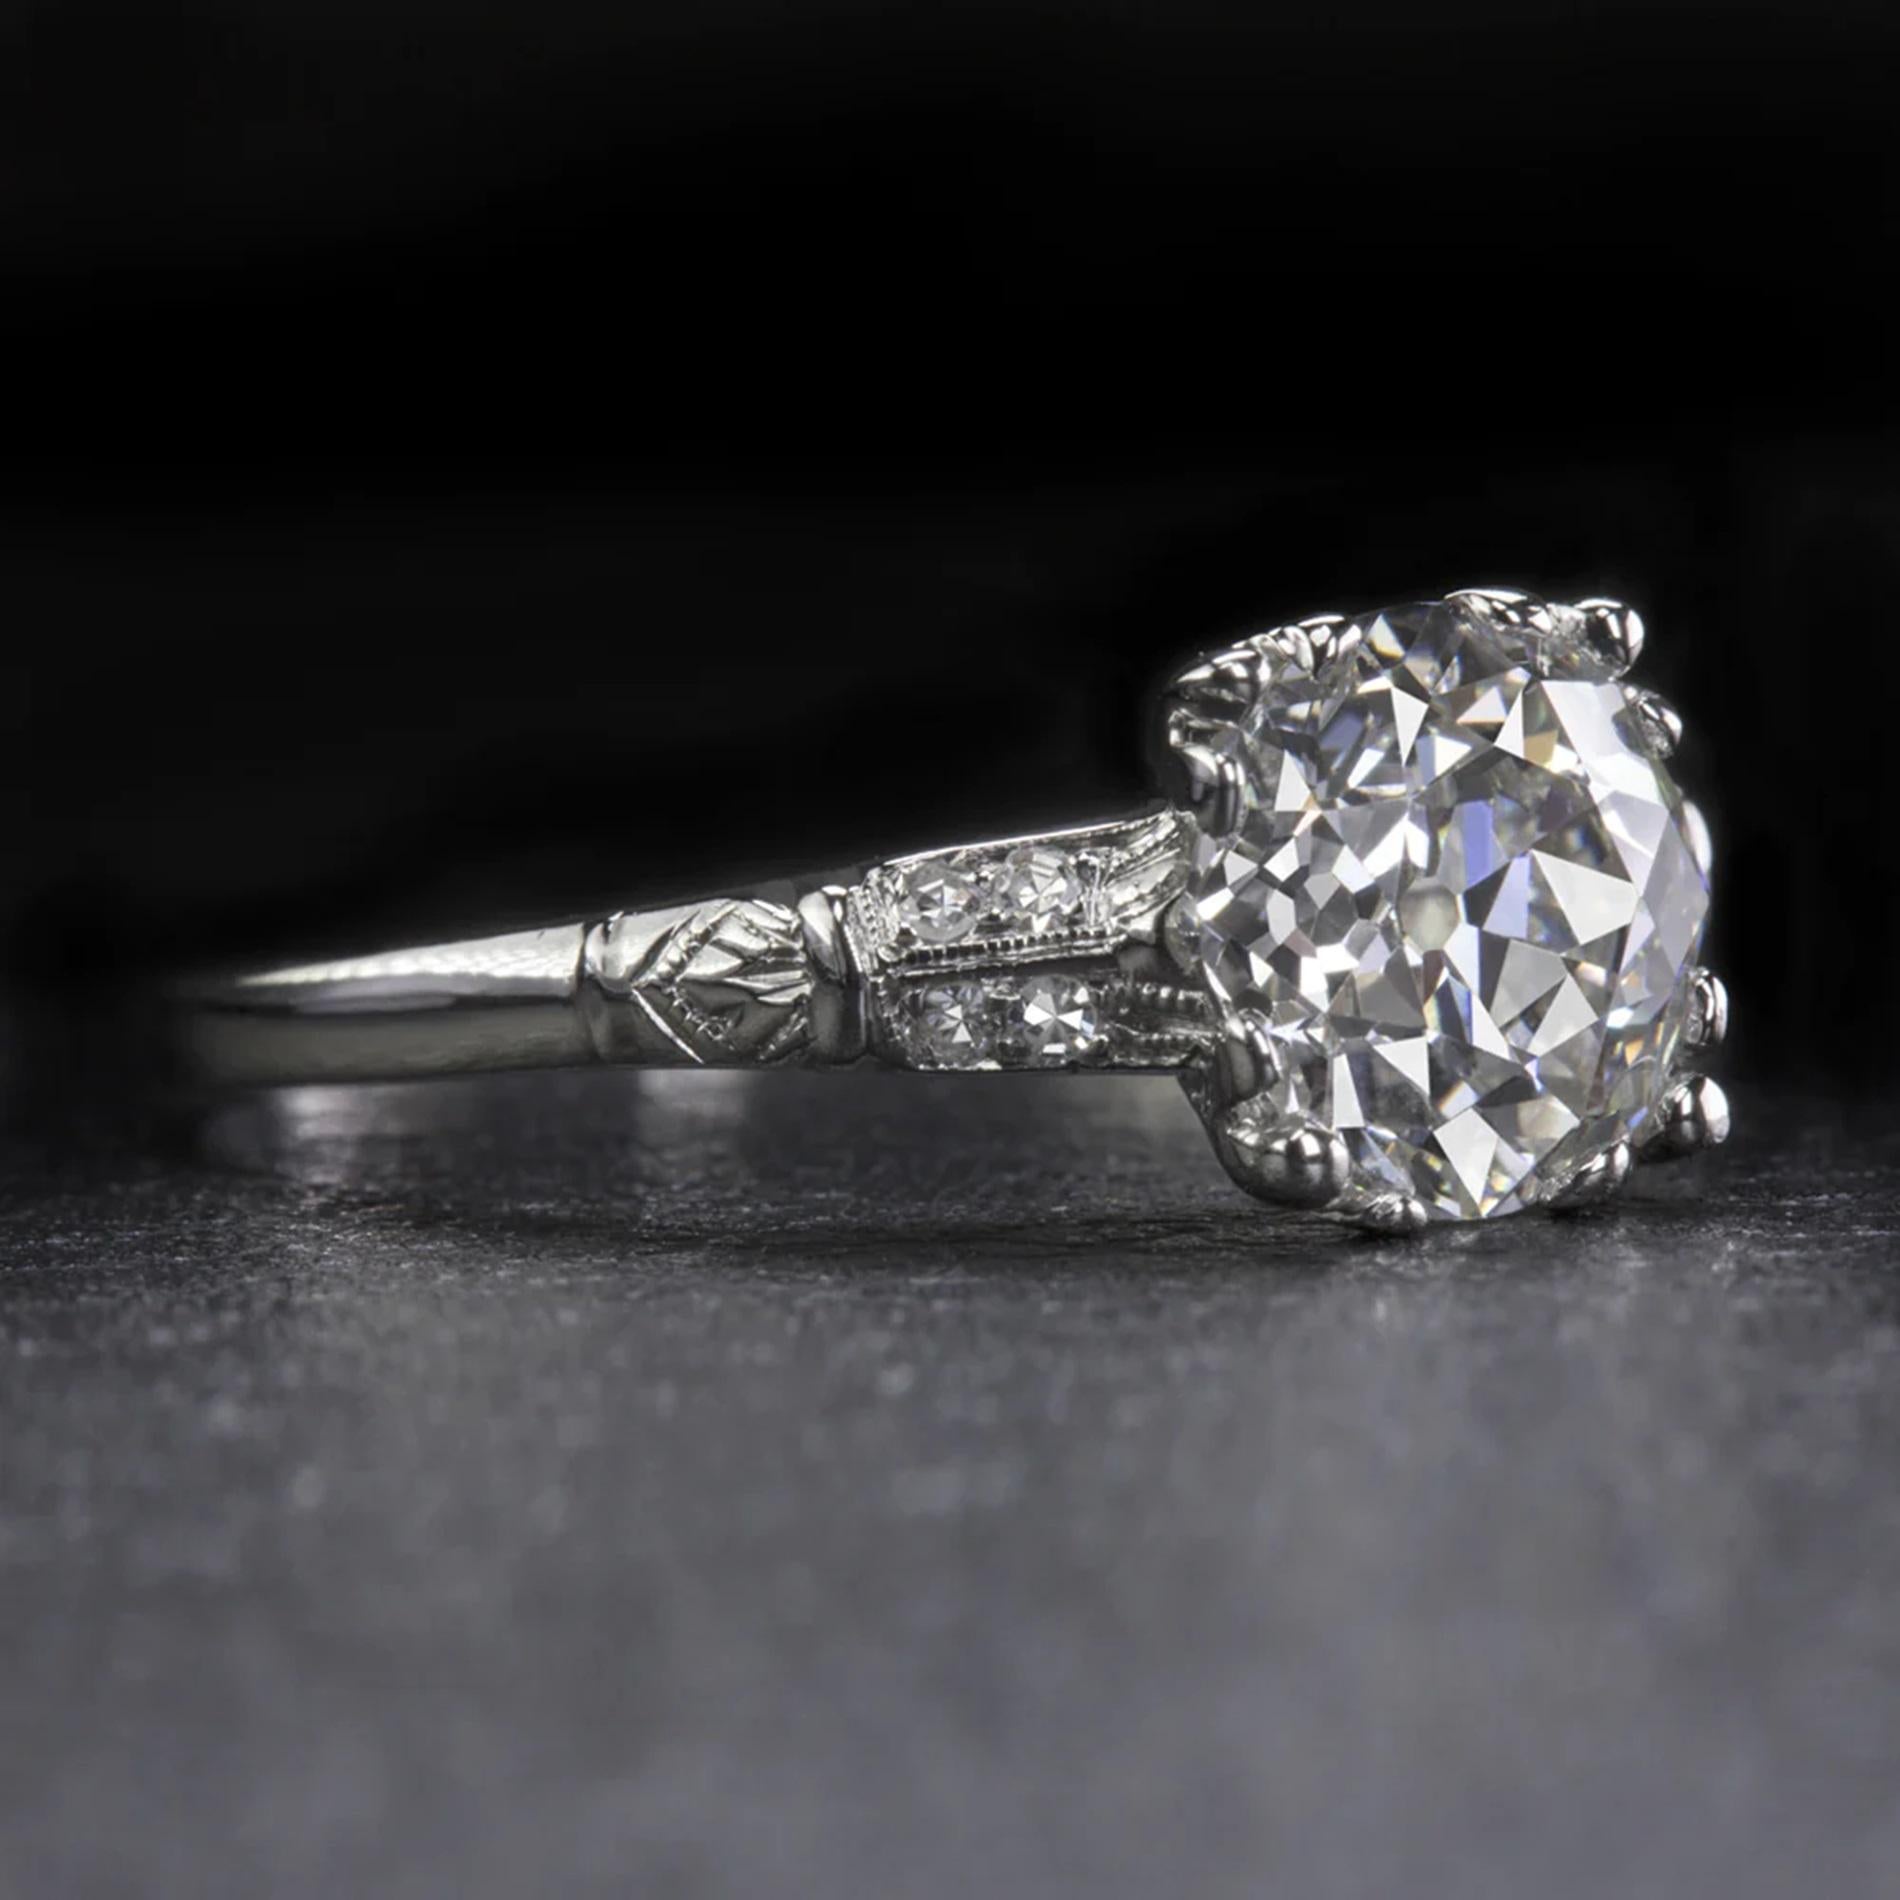 Découvrez l'élégance intemporelle de cette superbe bague en diamant Art déco originale, une pièce qui se distingue véritablement par sa qualité exceptionnelle. Au cœur de cette bague se trouve un diamant de taille européenne ancienne de 2,06 ct,